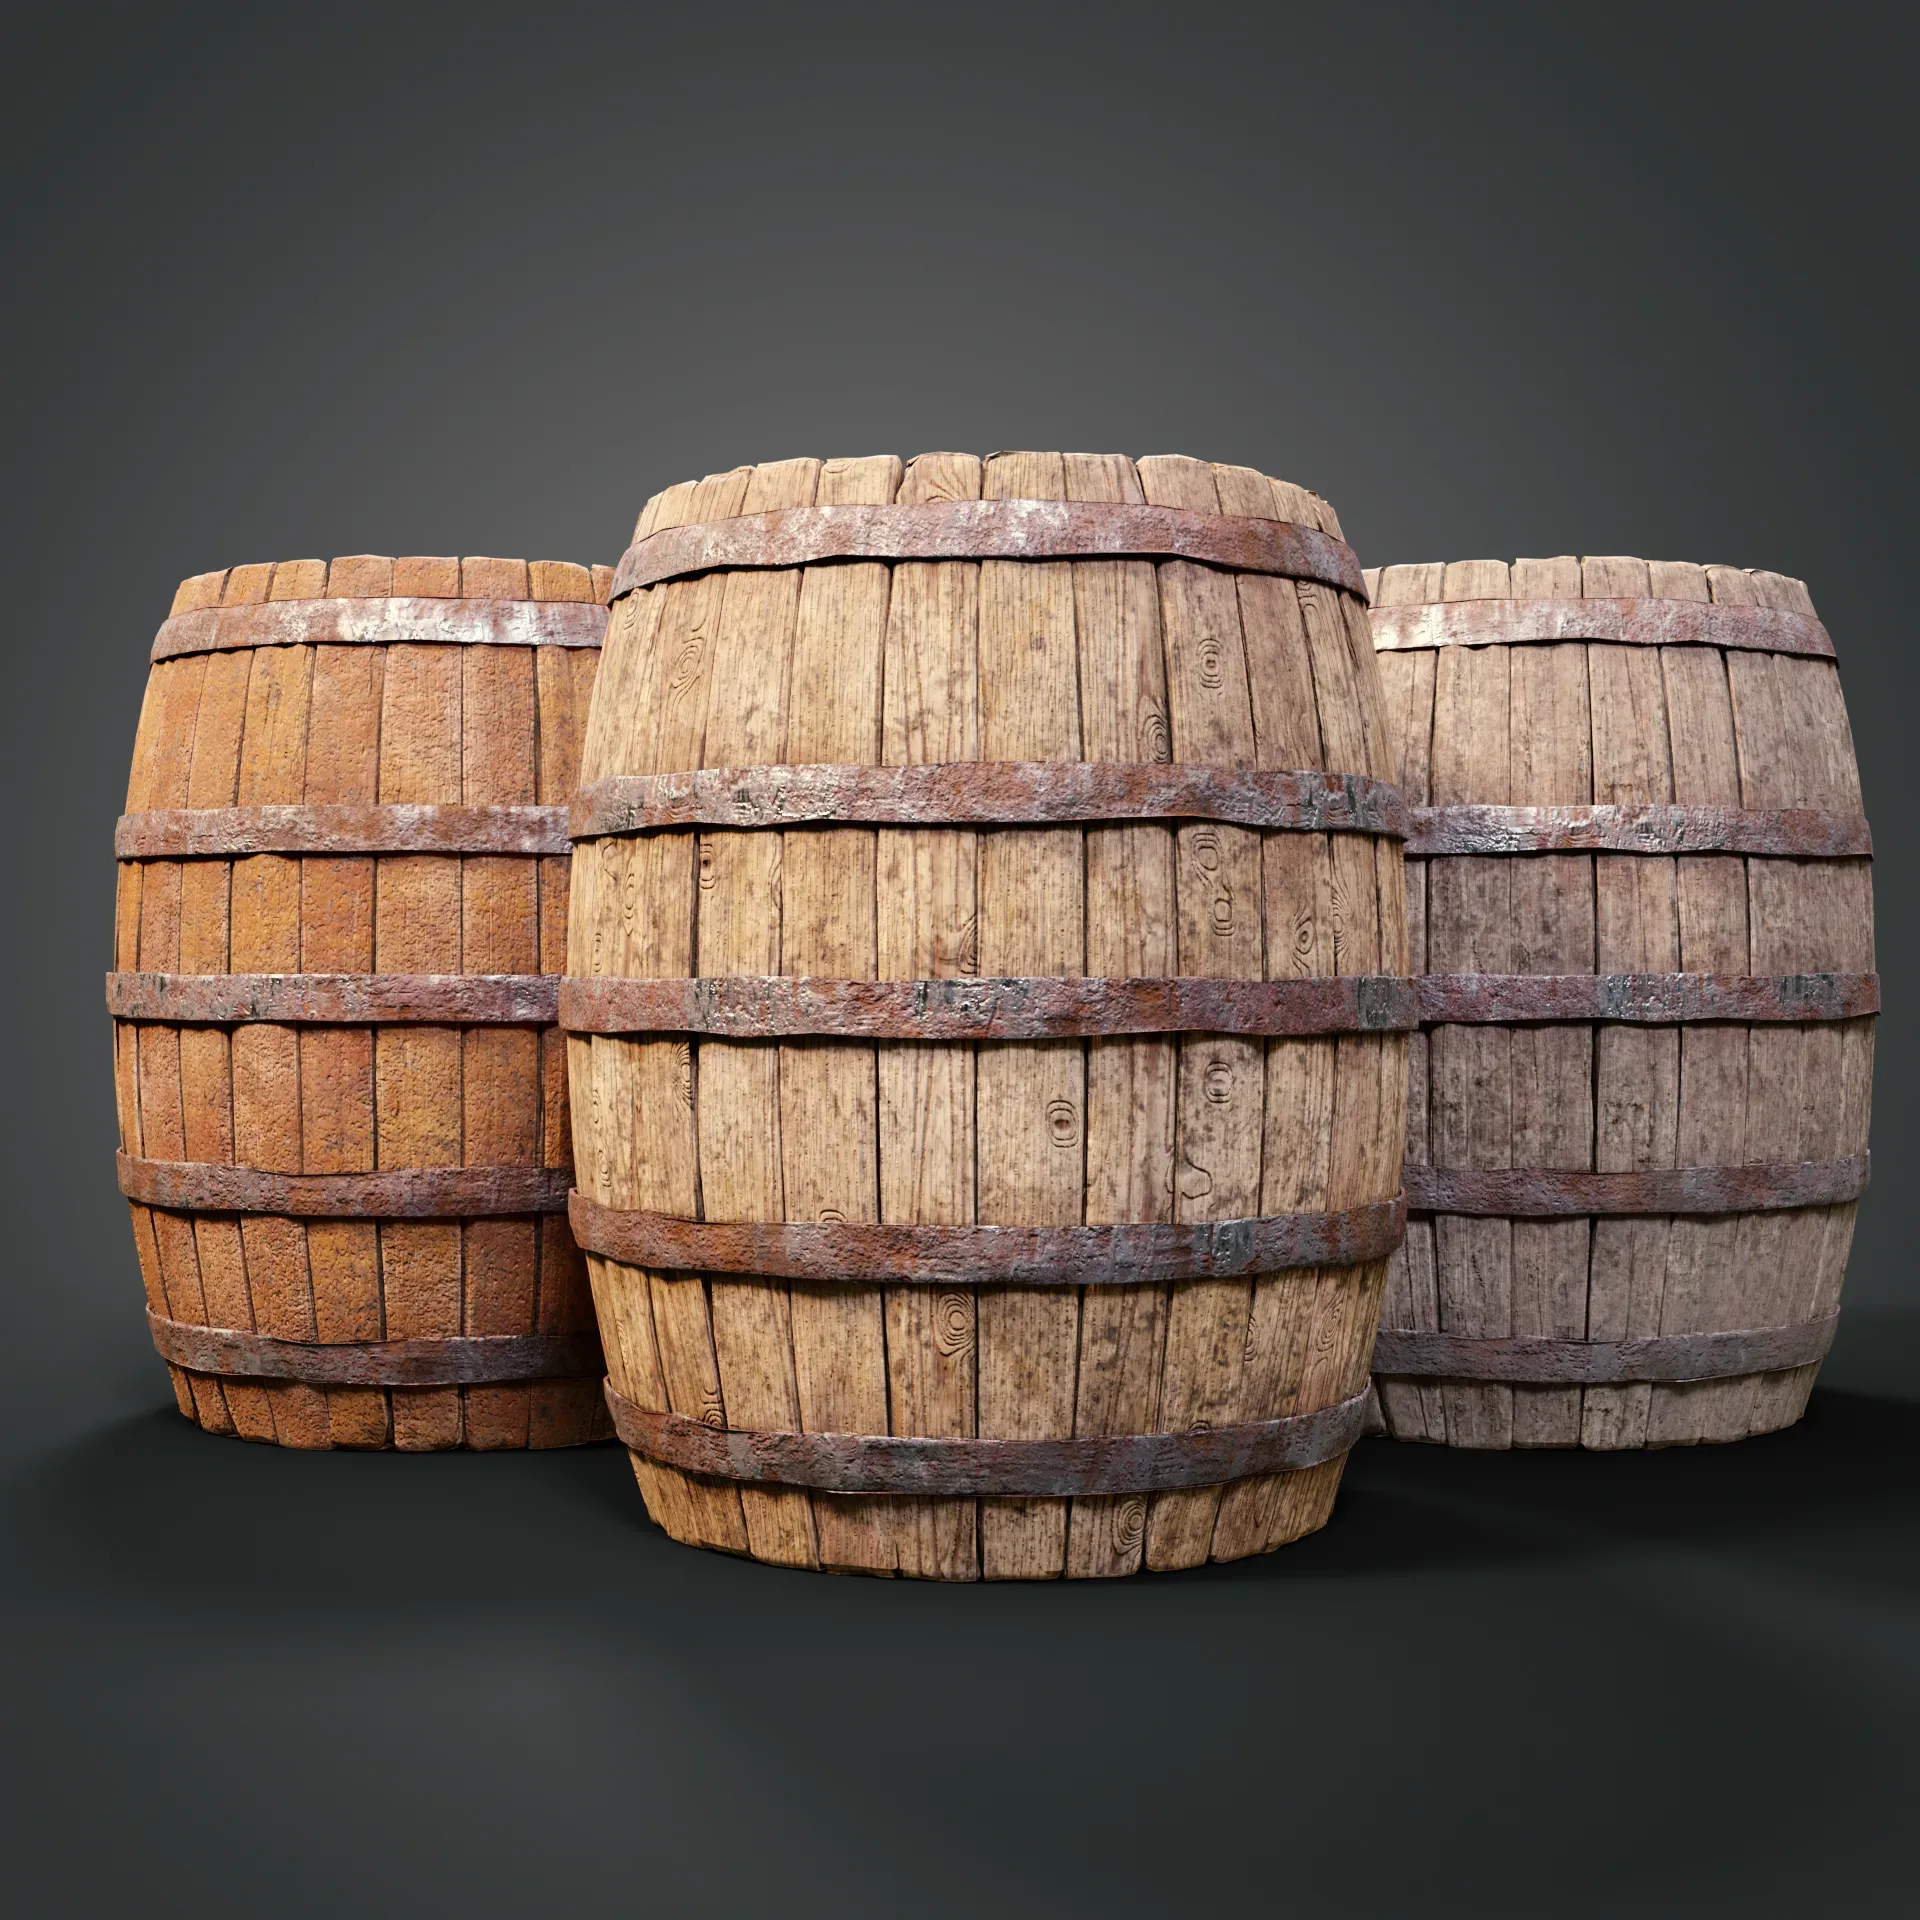 Medieval barrels